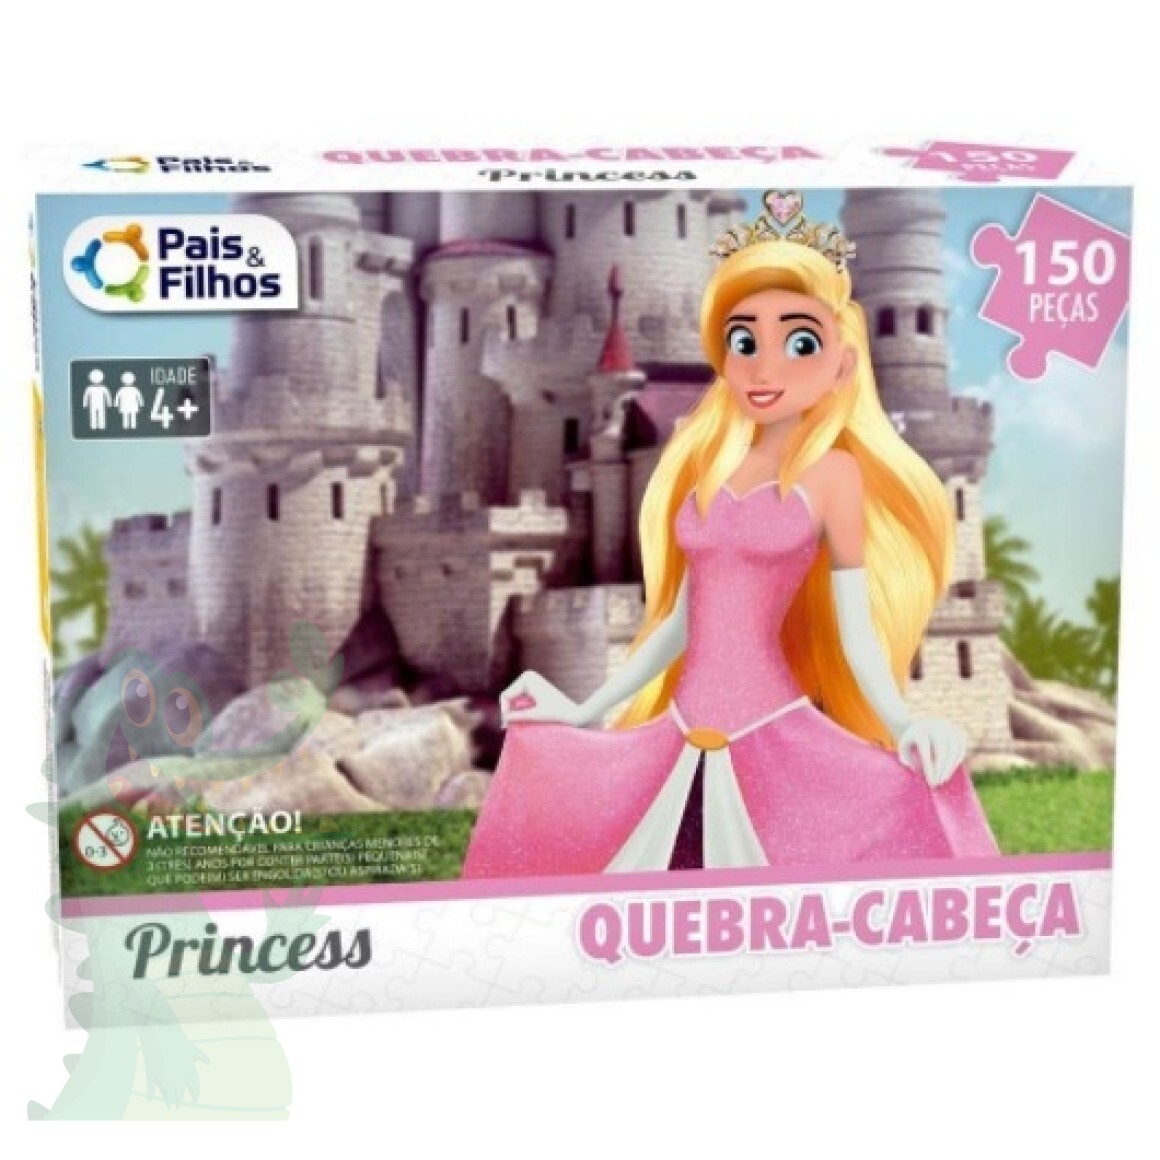 Jogo Quebra Cabeça Princess Princesas - 100 Peças - Jogo De Tabuleiro - #